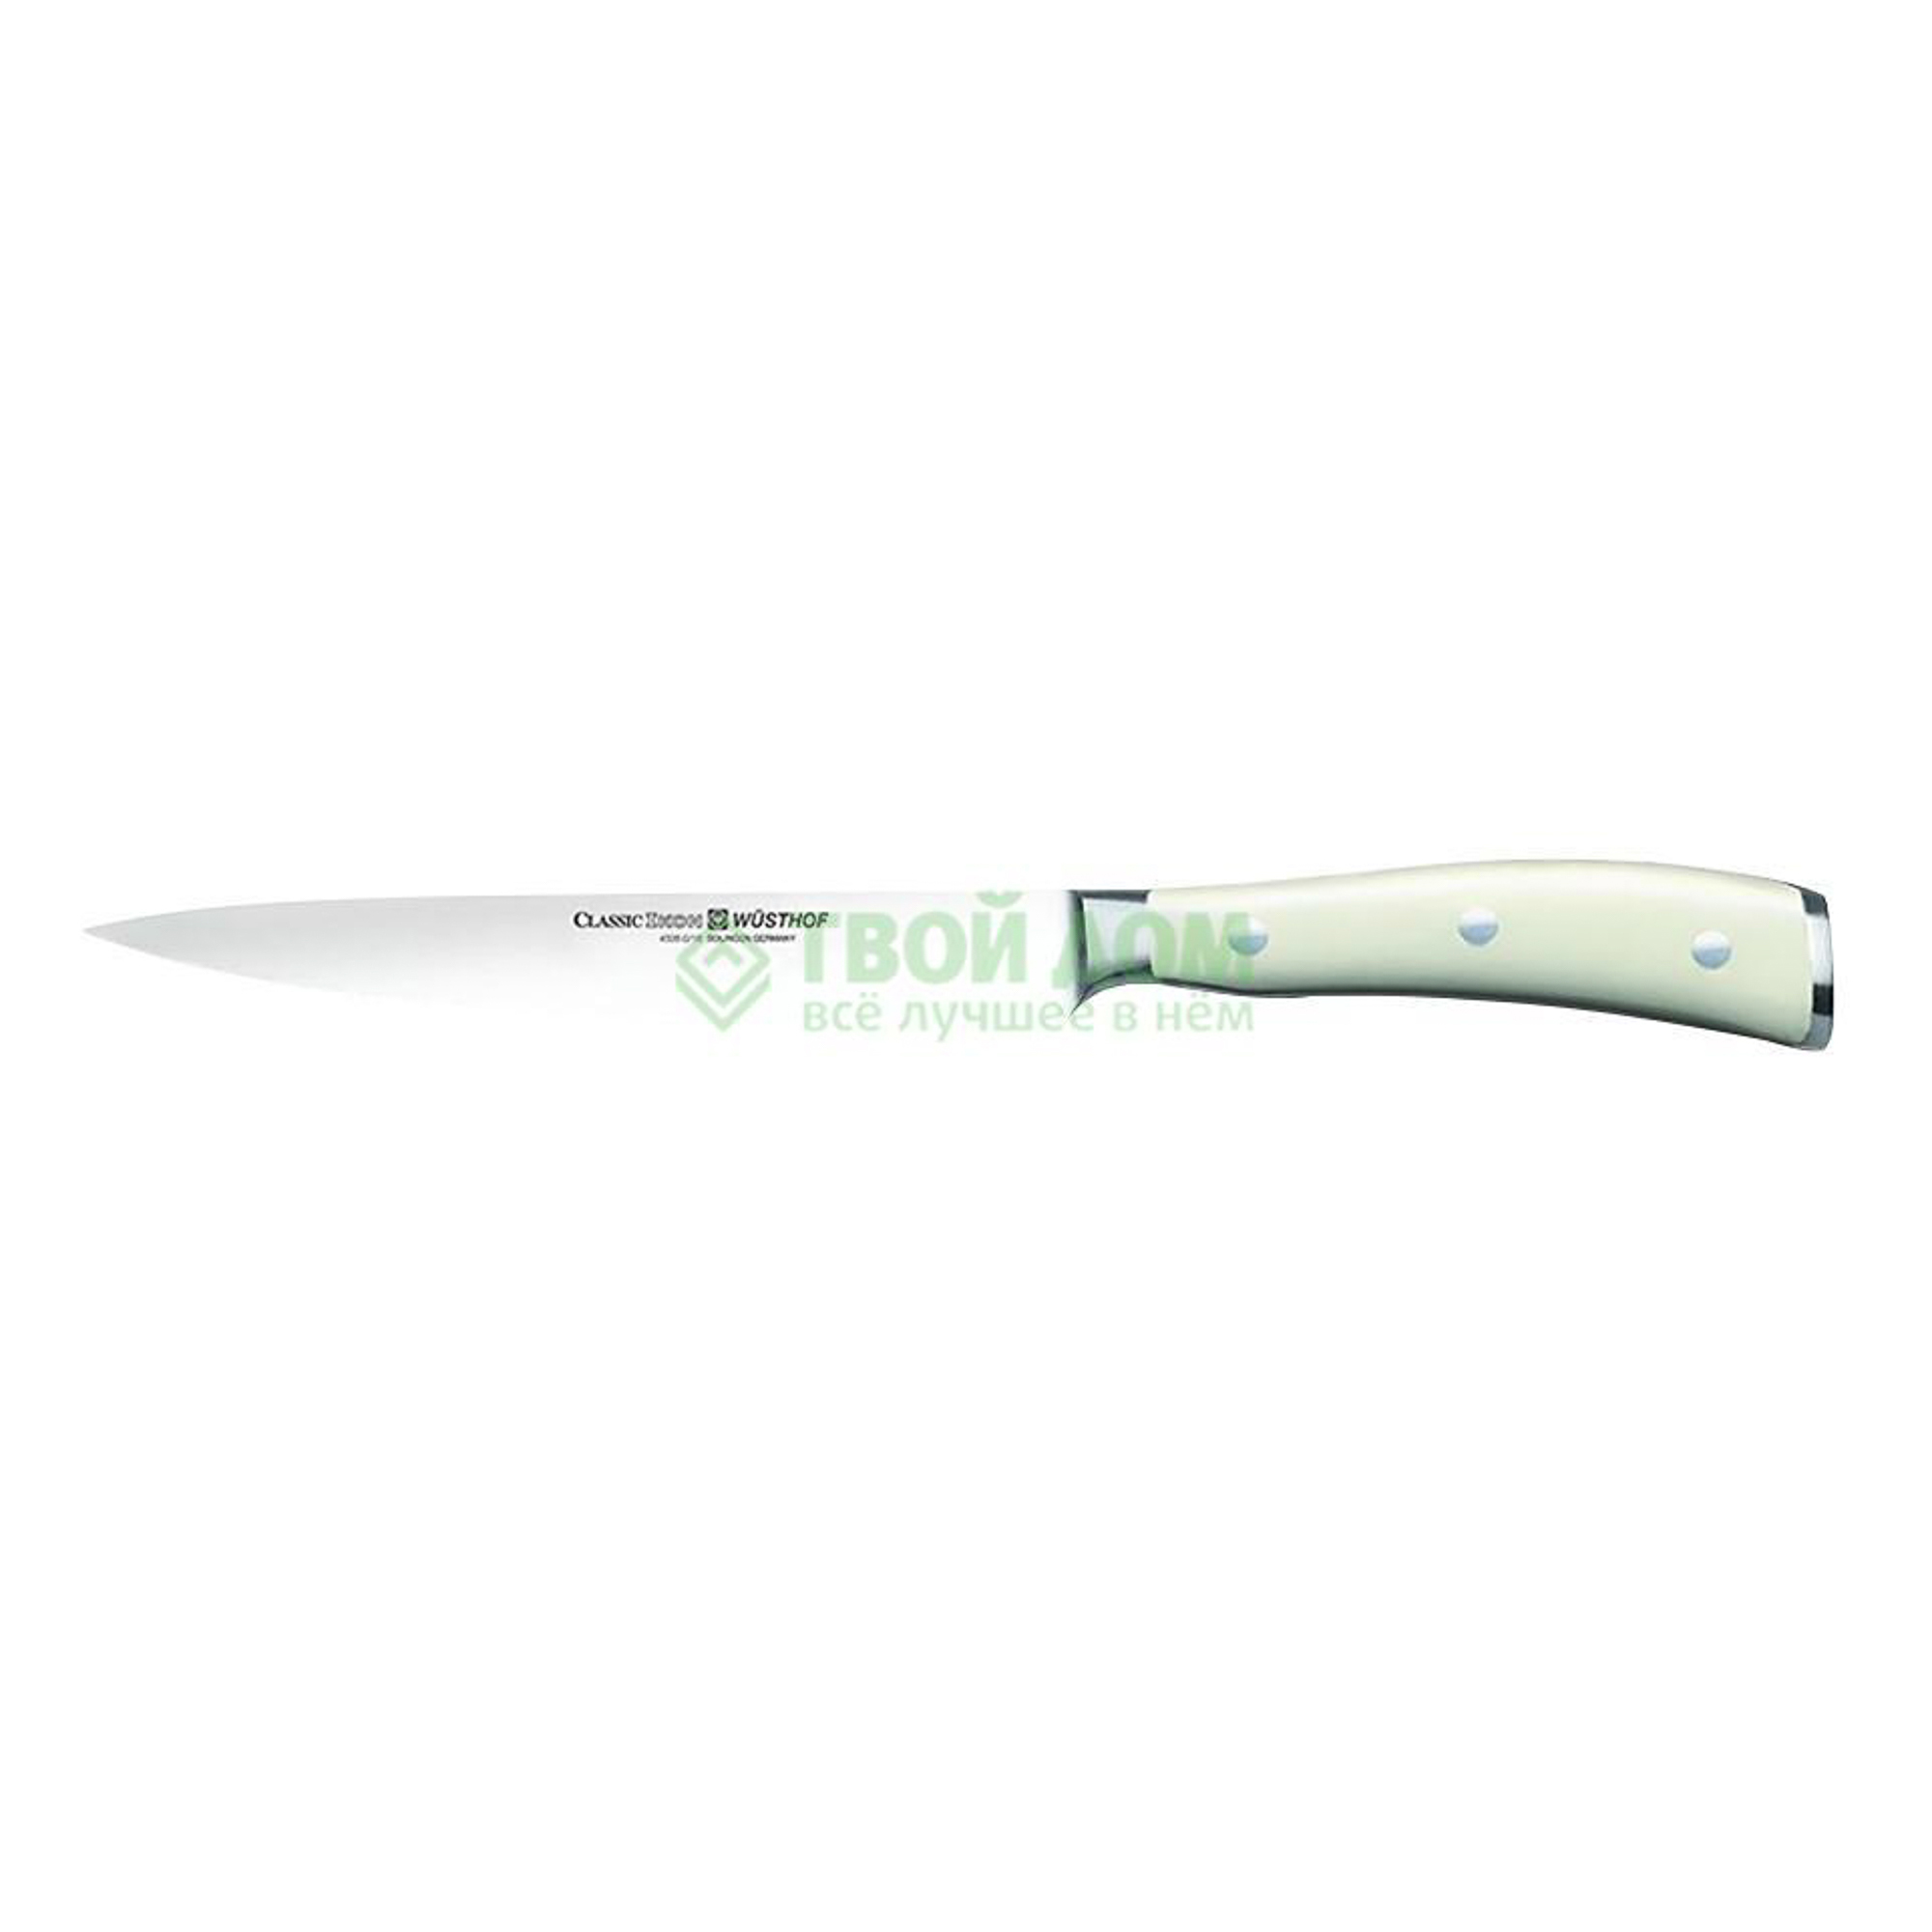 Нож для мяса Wusthoff 16 см (4506-0/16 WUS), цвет серебристый - фото 1